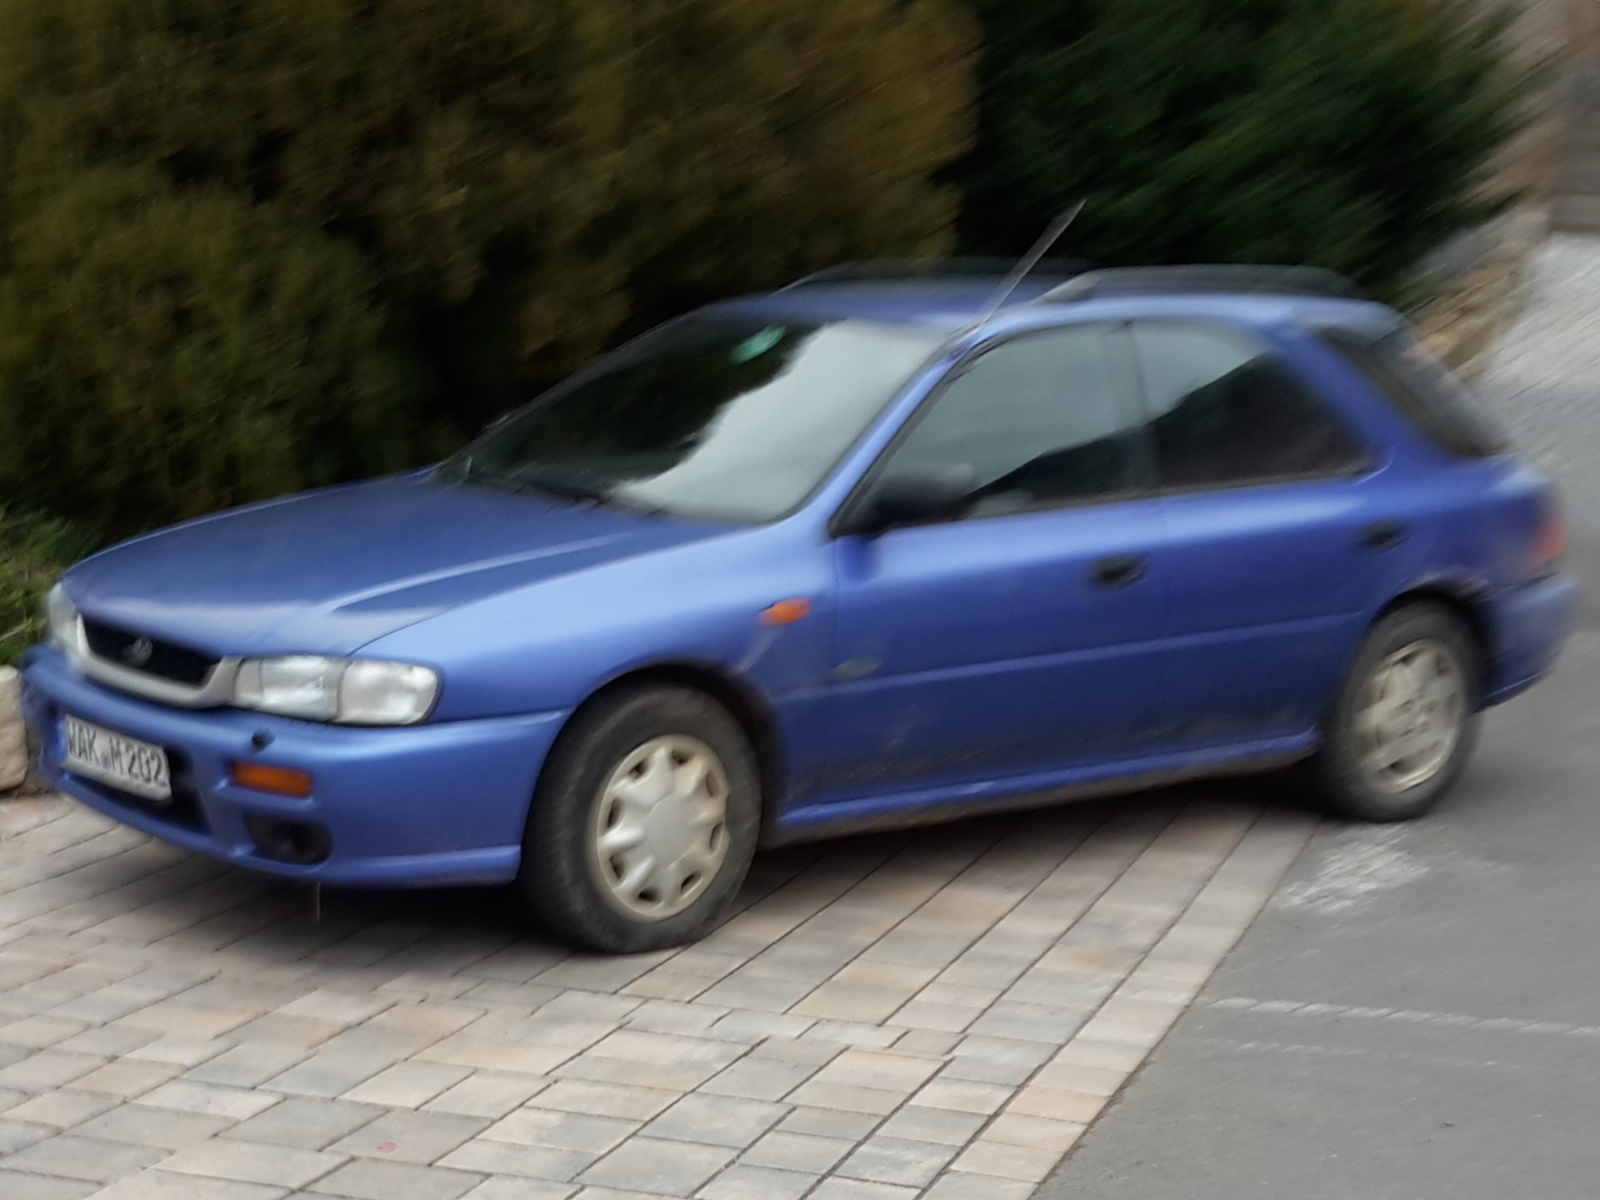 Subaru Impreza Kombi